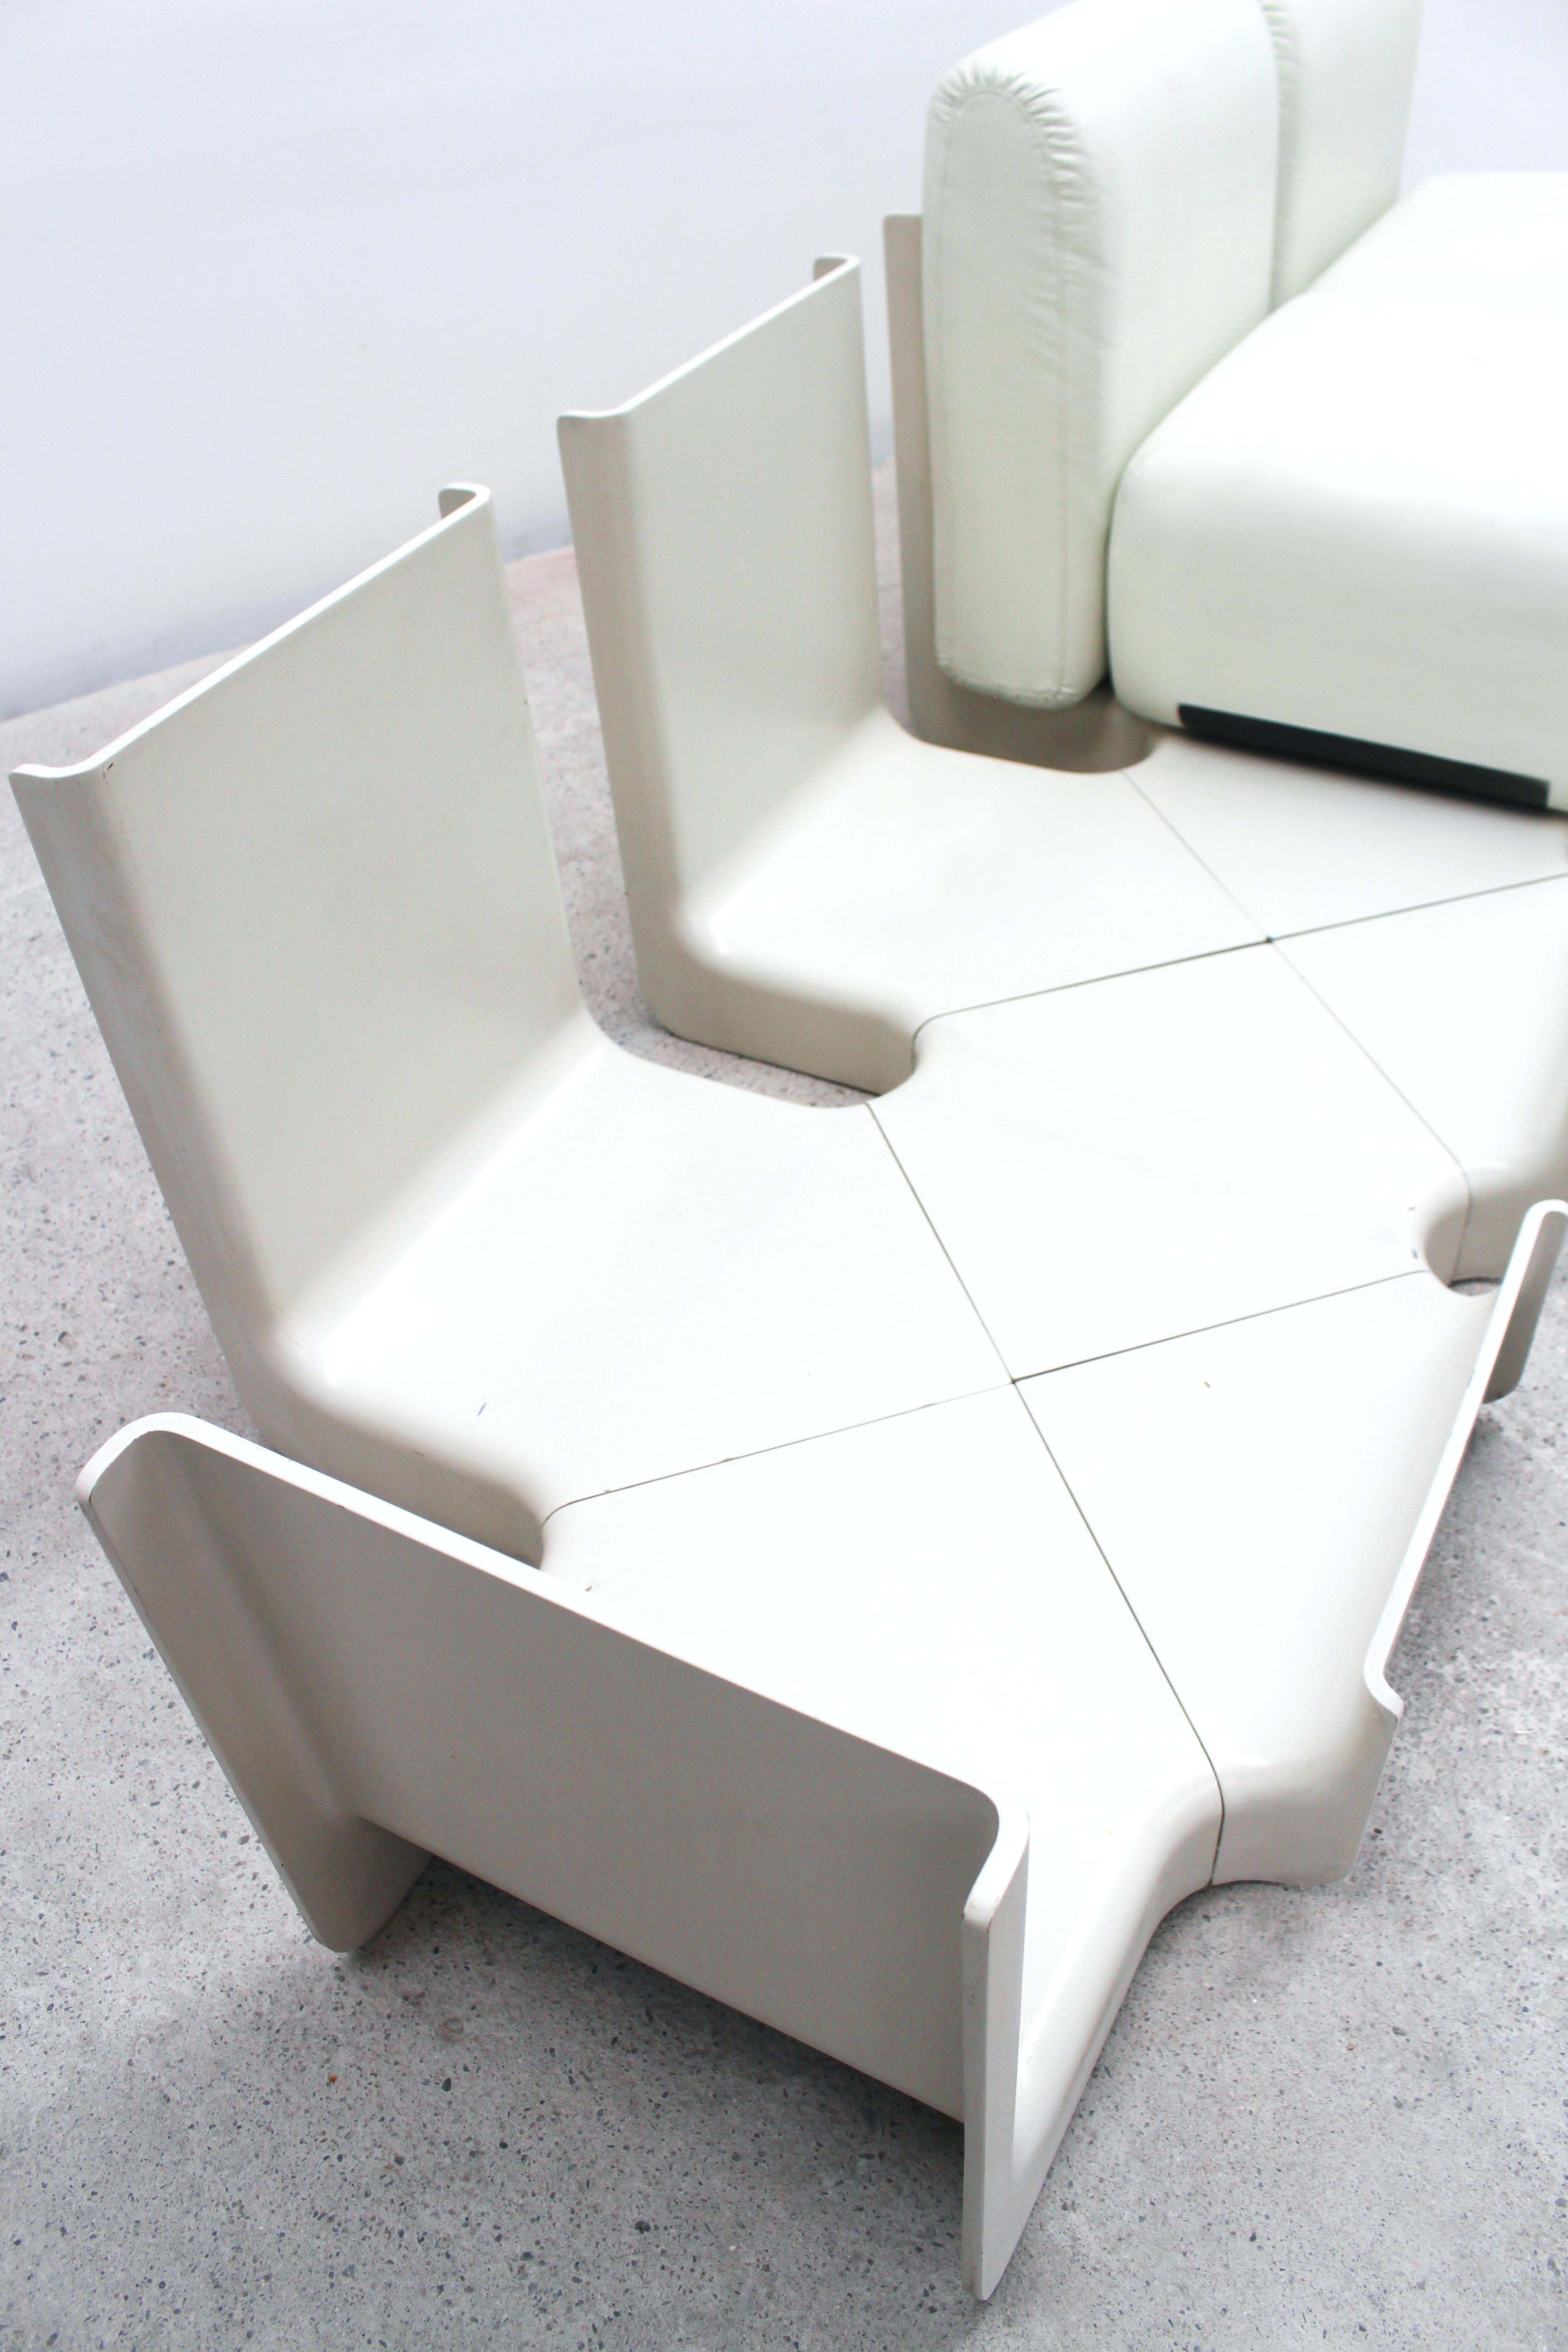 1968. designed by Emilio Guarnacci, F. Padovano, C. Vagnoni.
edition Duna.

sofa dimensions : L 235 x H 70 x P 70 cm
table L 90 x l 40 x H 45 cm

structure résine polyuréthane 